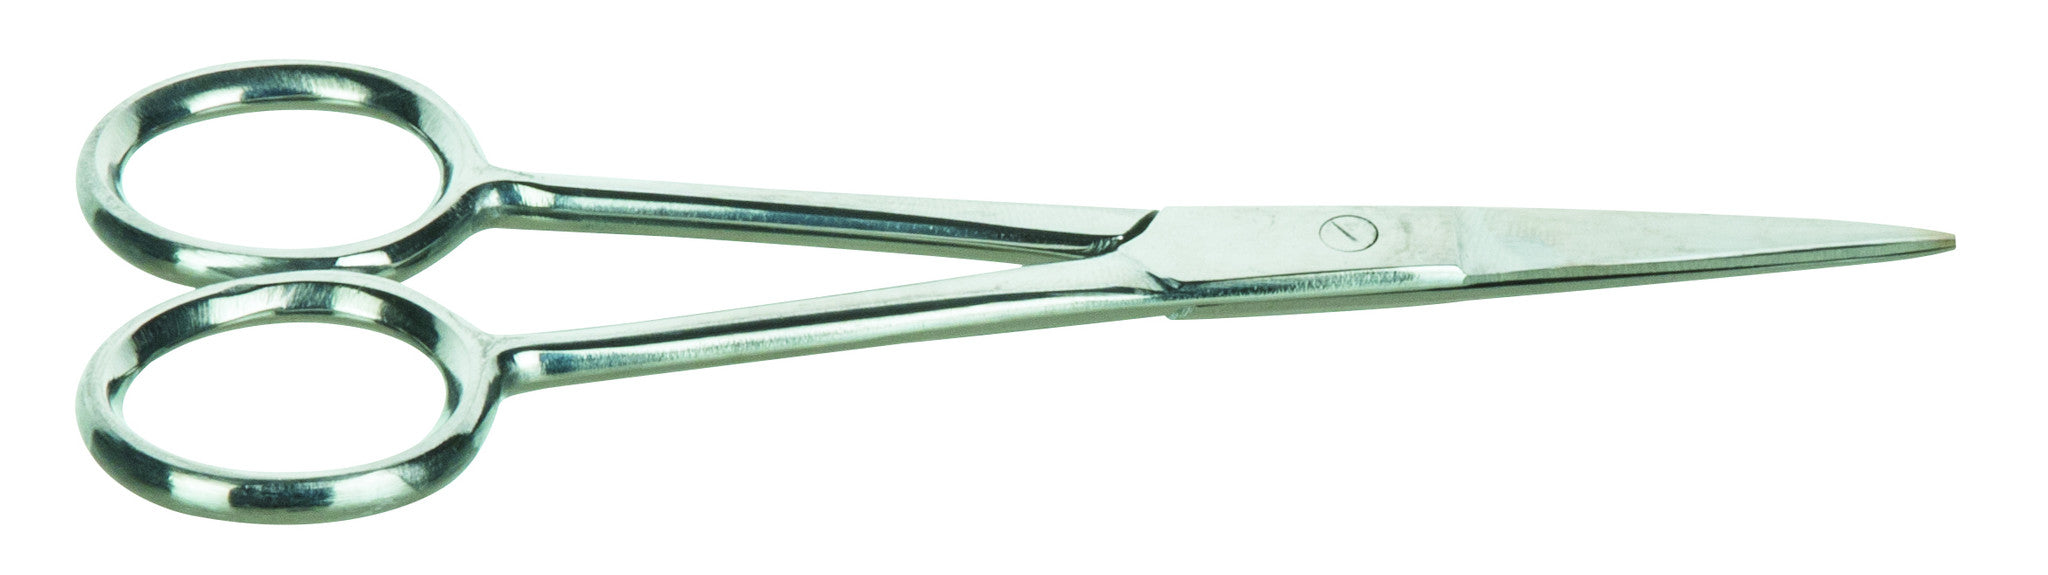 Dissecting Scissor 110mm, S.Steel